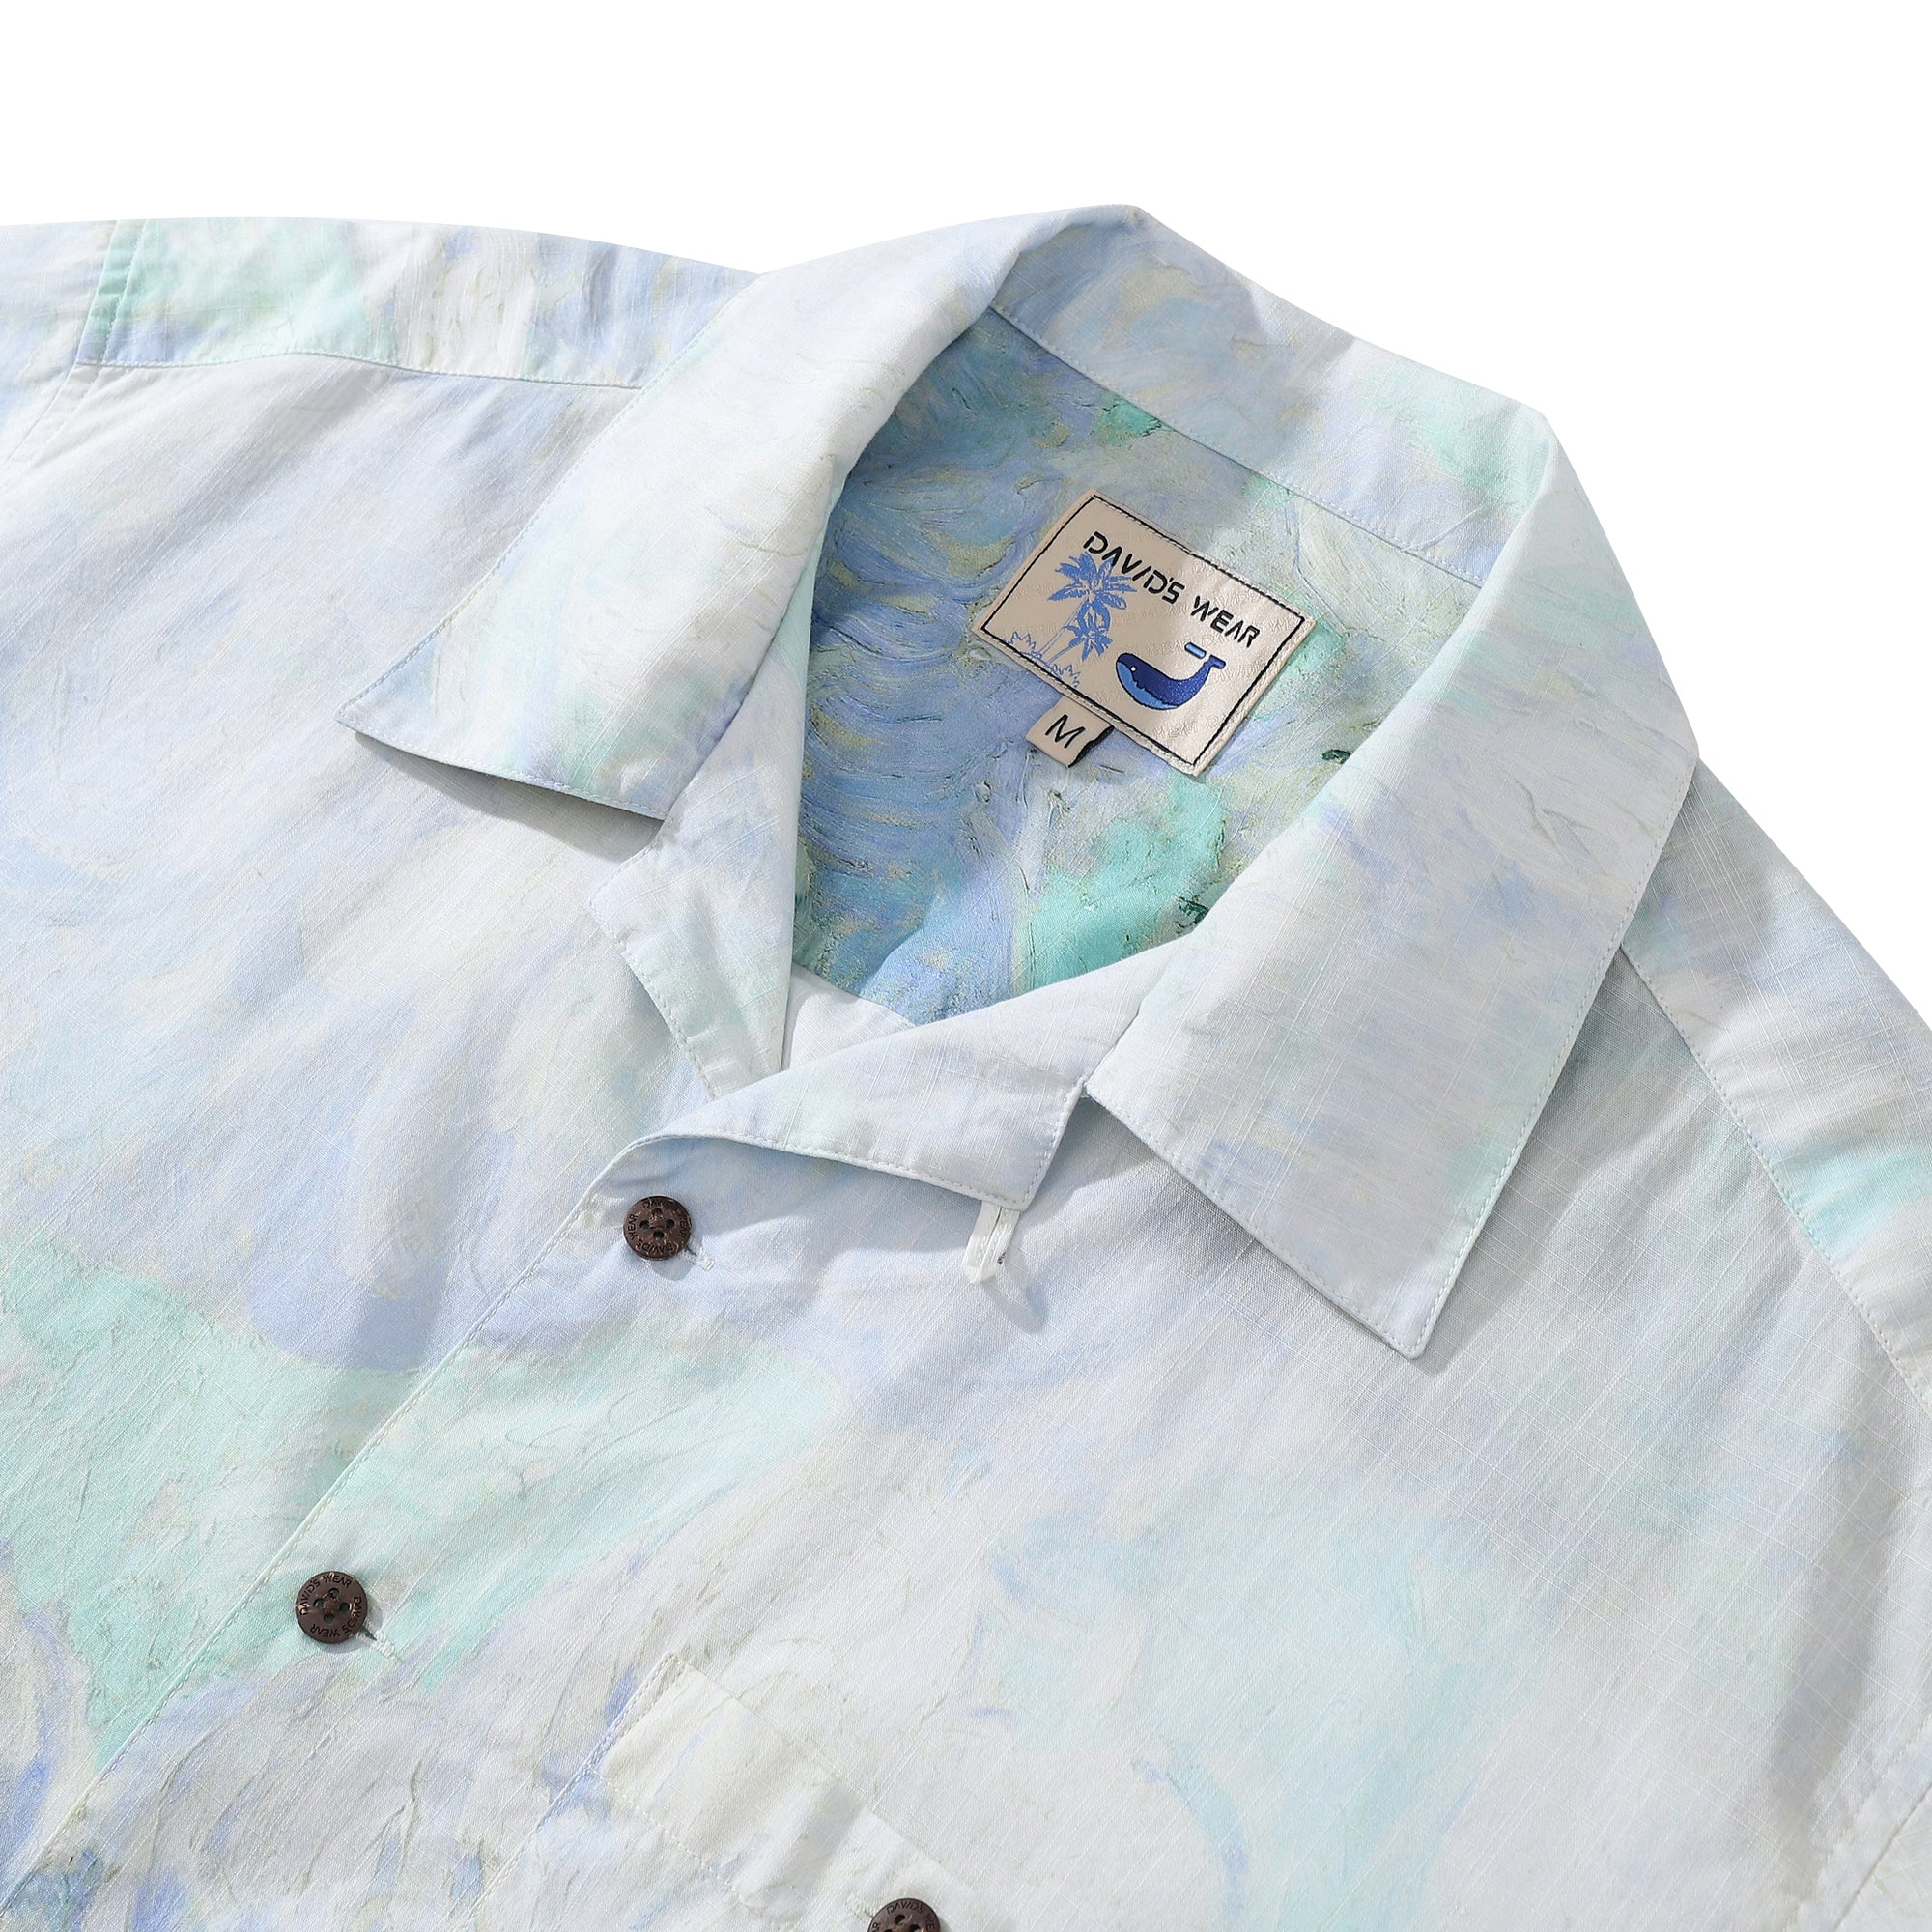 Hawaiian Men's Shirt Vincent Willem Van Gogh Wheat Field With Cypresses Designer 100% Cotton Short Sleeve Shirt